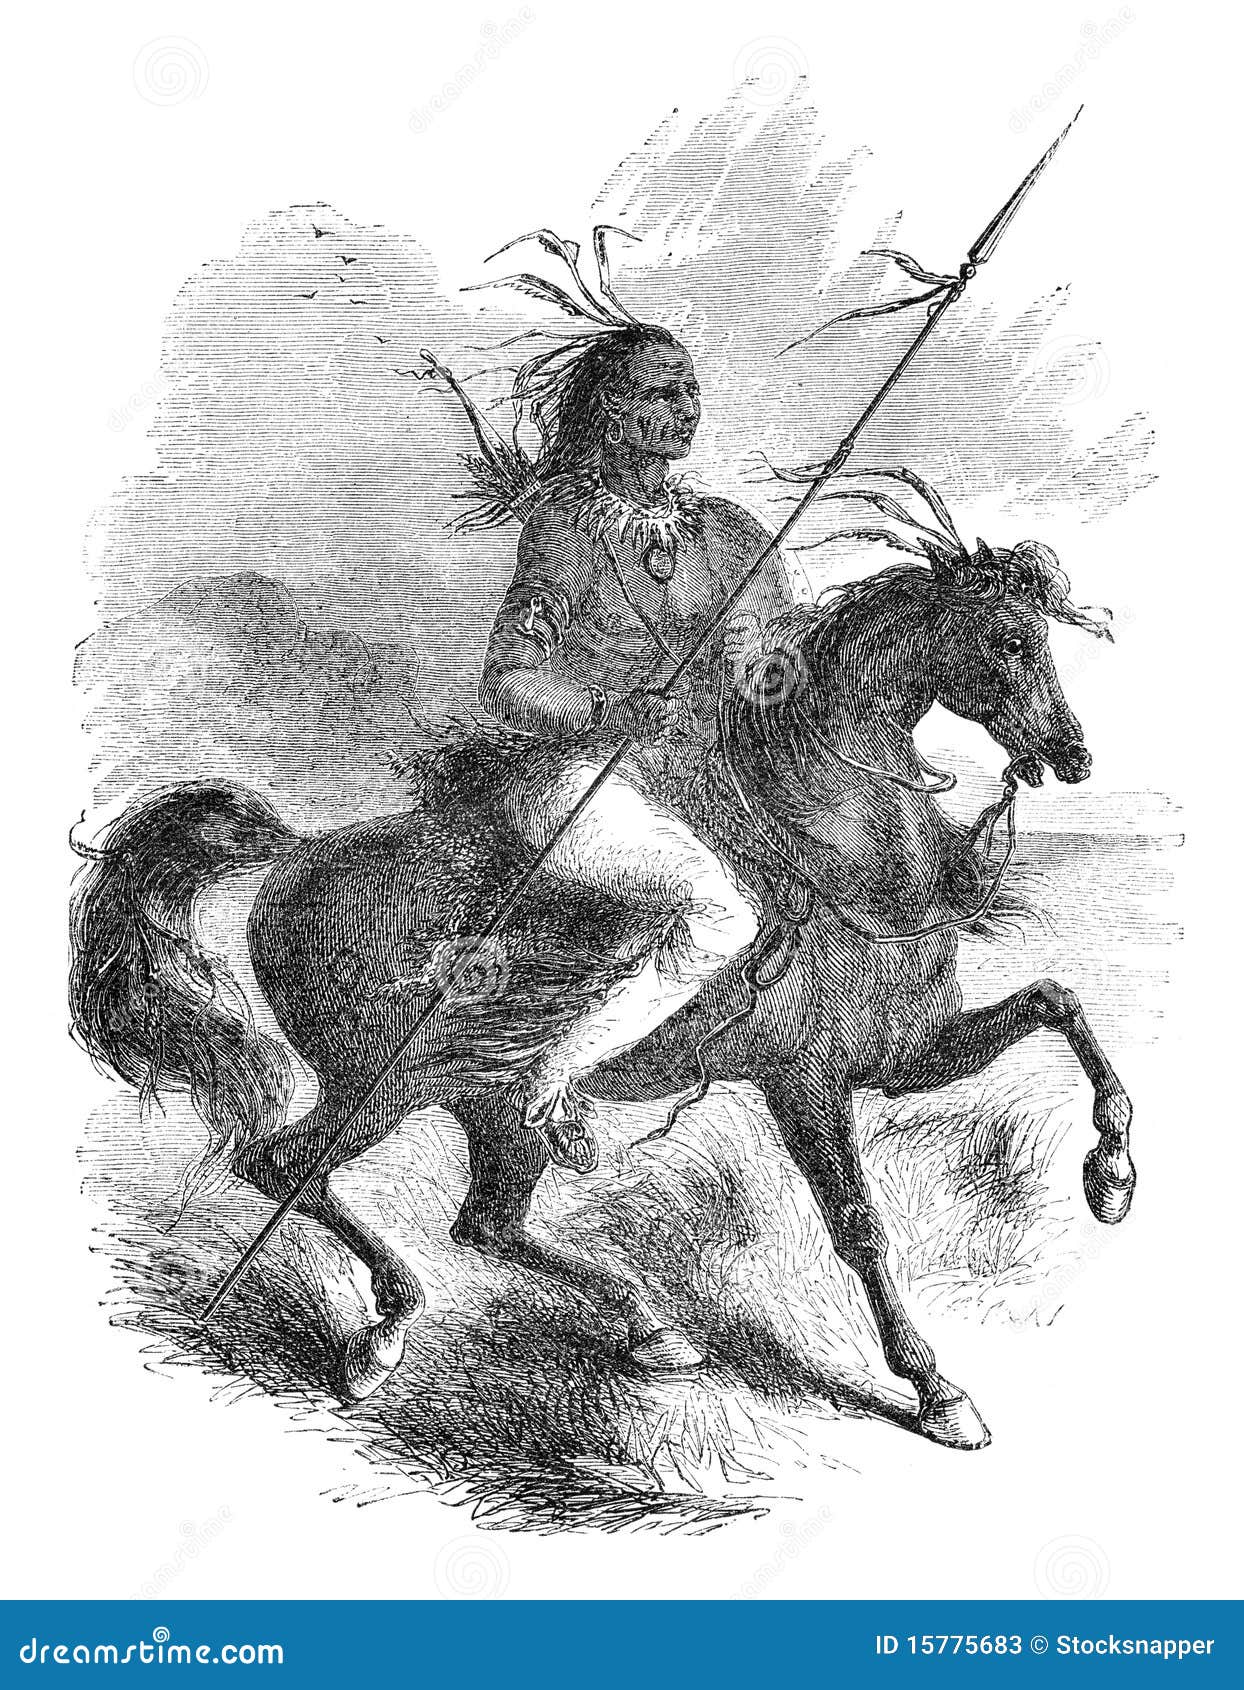 Comanche wojownik. 1880 amerykańskiego amerika comanche wydania Ernst hesse końskich ilustracyjnych rodzimych nord oryginalnie publikował S Szwedzi Von Wojownik wartegg